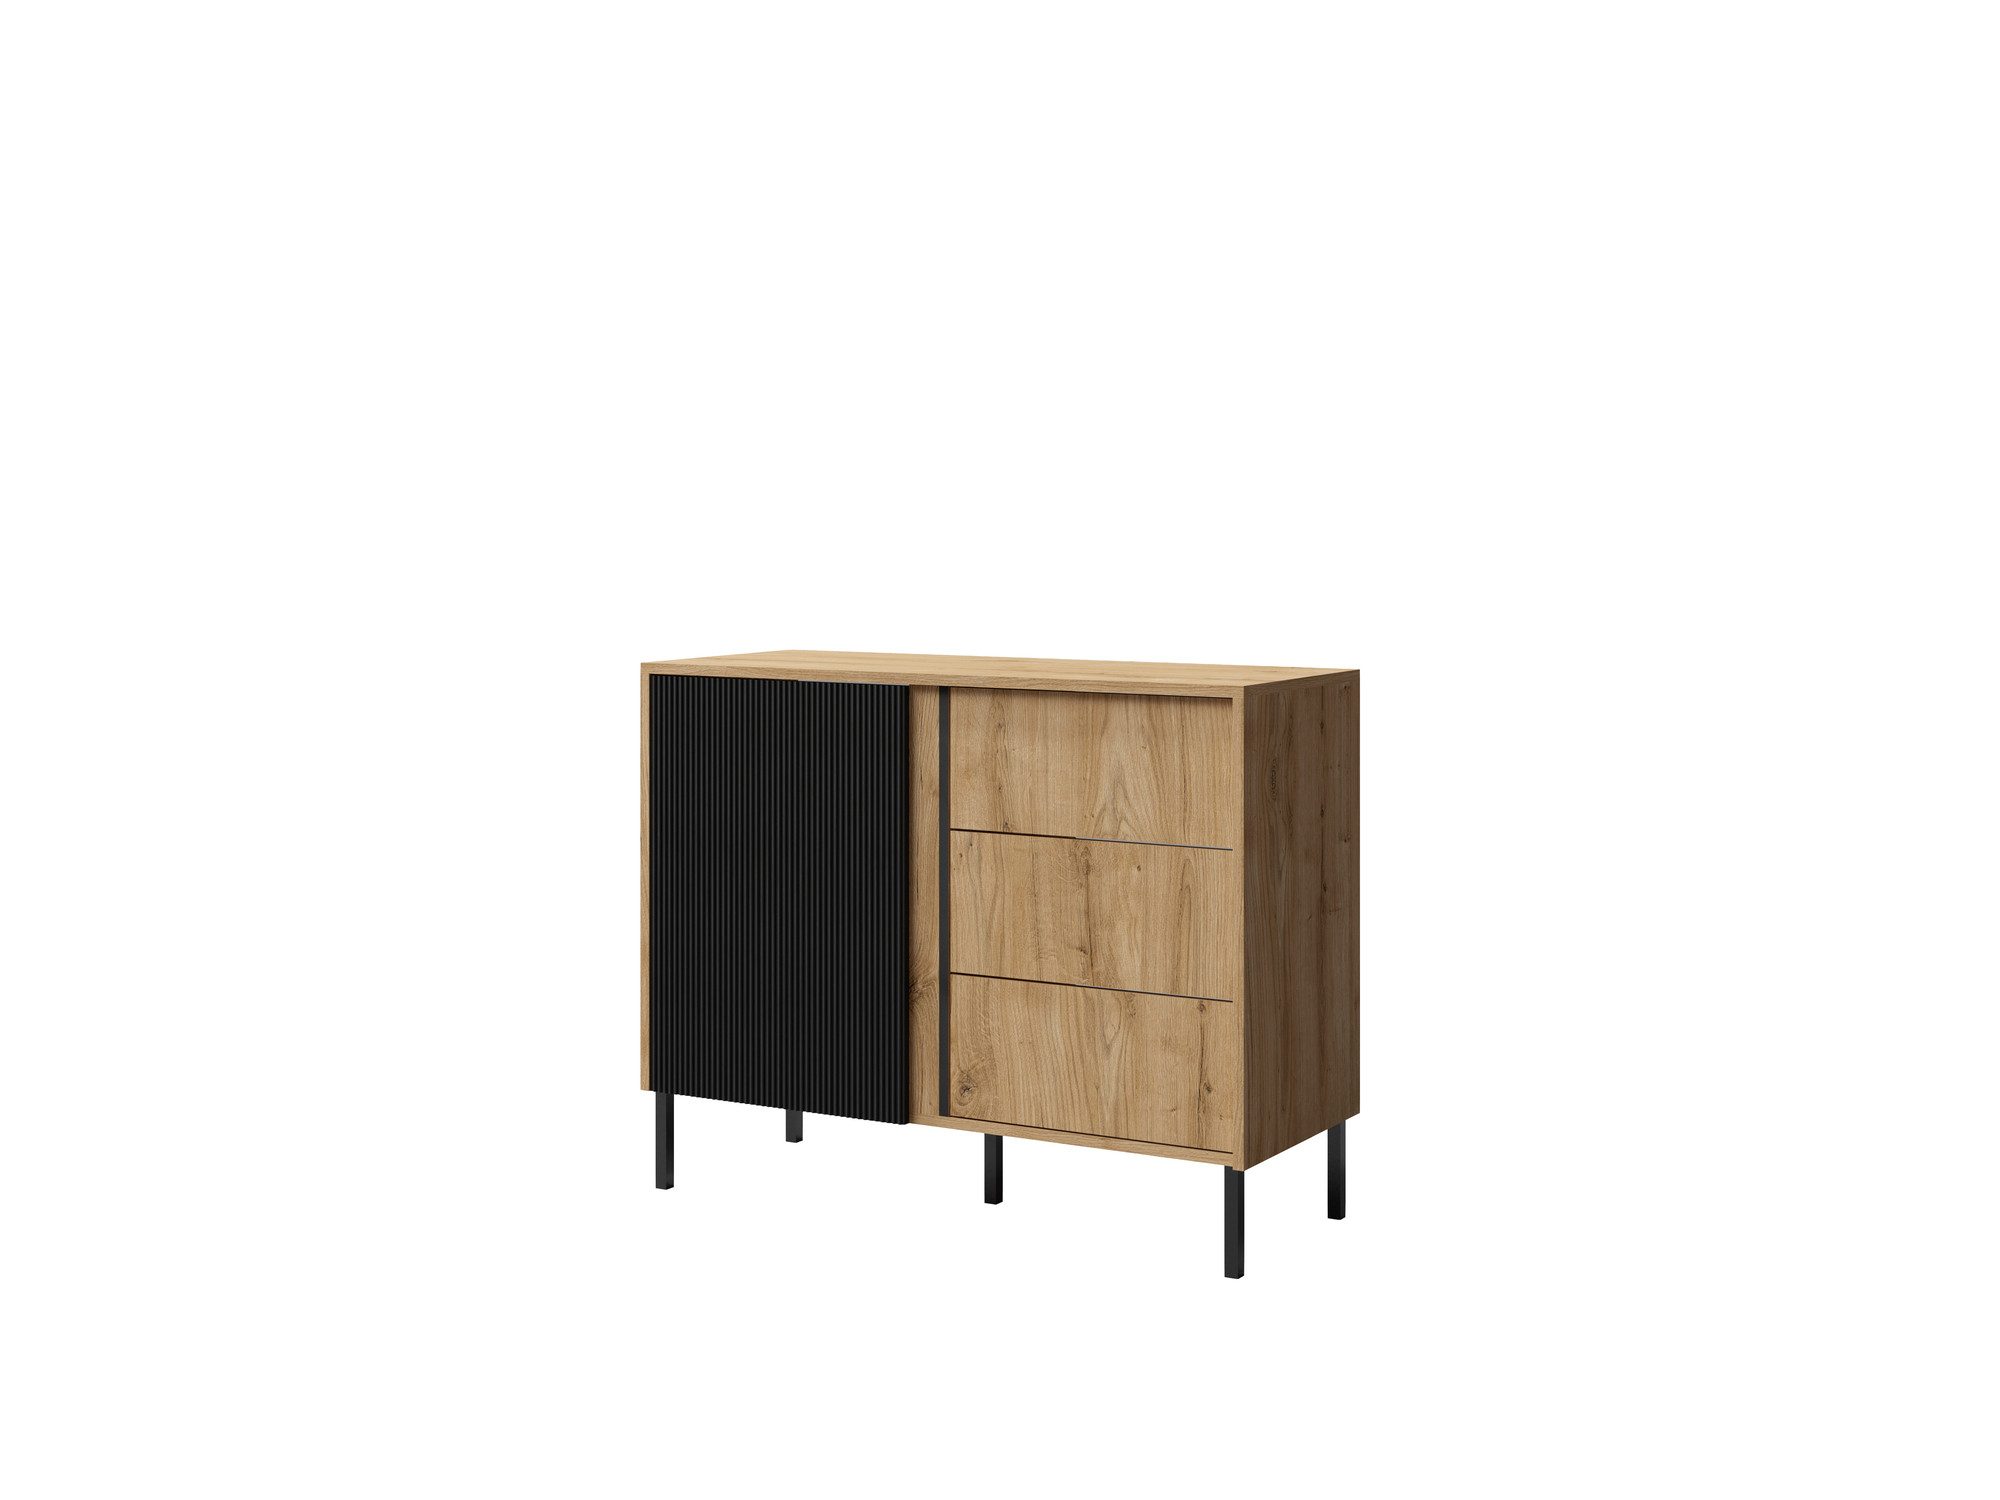 Beautysofa Kommode Moderne, elegante, geräumige Kommode mit Schubladen MIA05 (Möbel aus MDF-Platten), B:100/H:80/T:41cm, Farbe: Ewige eiche+schwarz